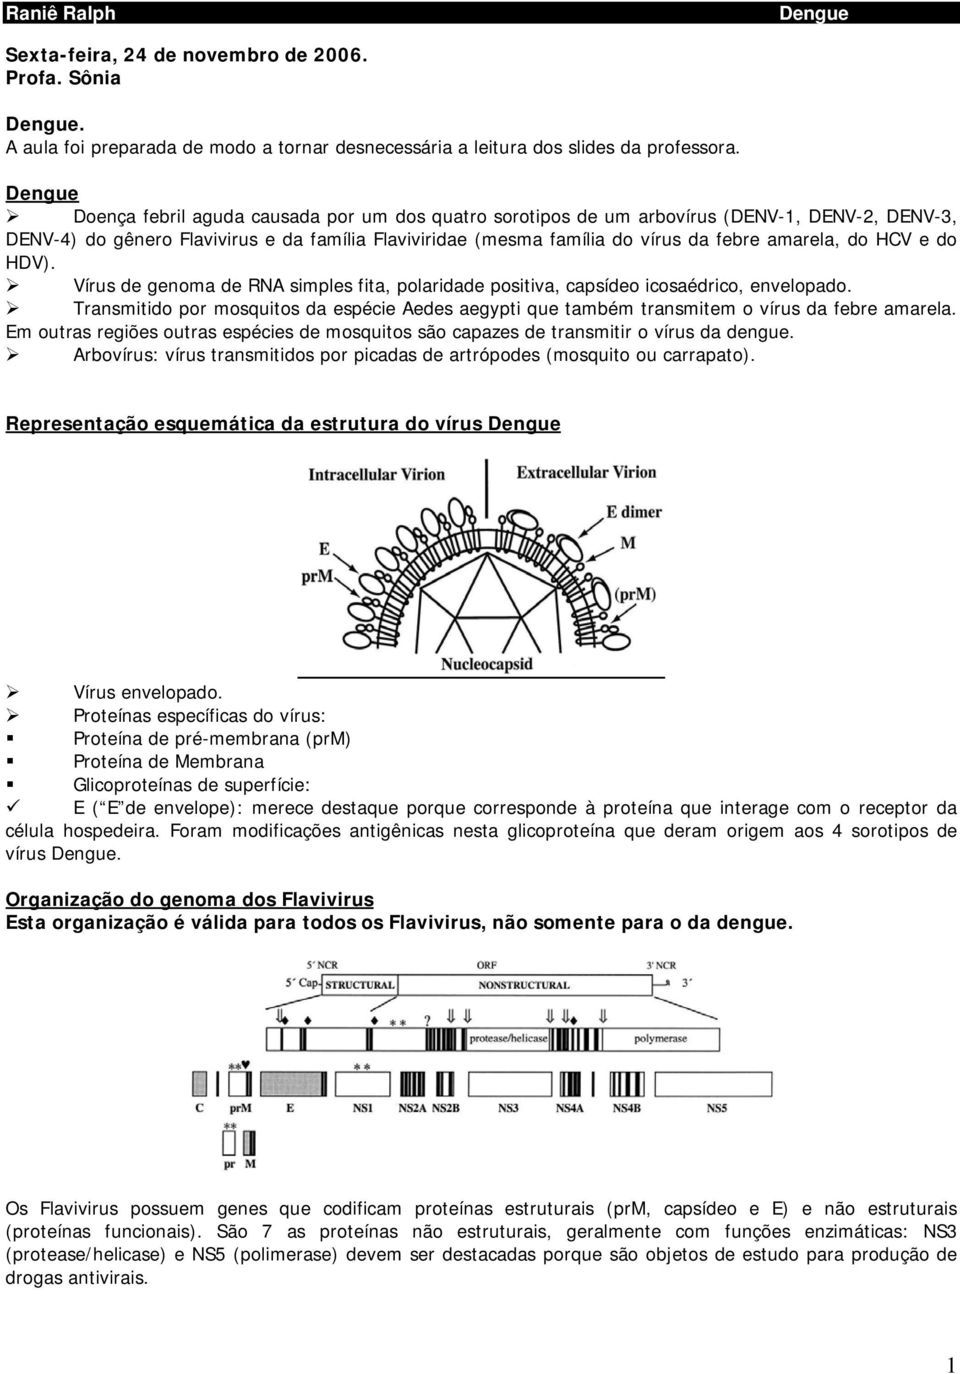 HCV e do HDV). Vírus de genoma de RNA simples fita, polaridade positiva, capsídeo icosaédrico, envelopado.